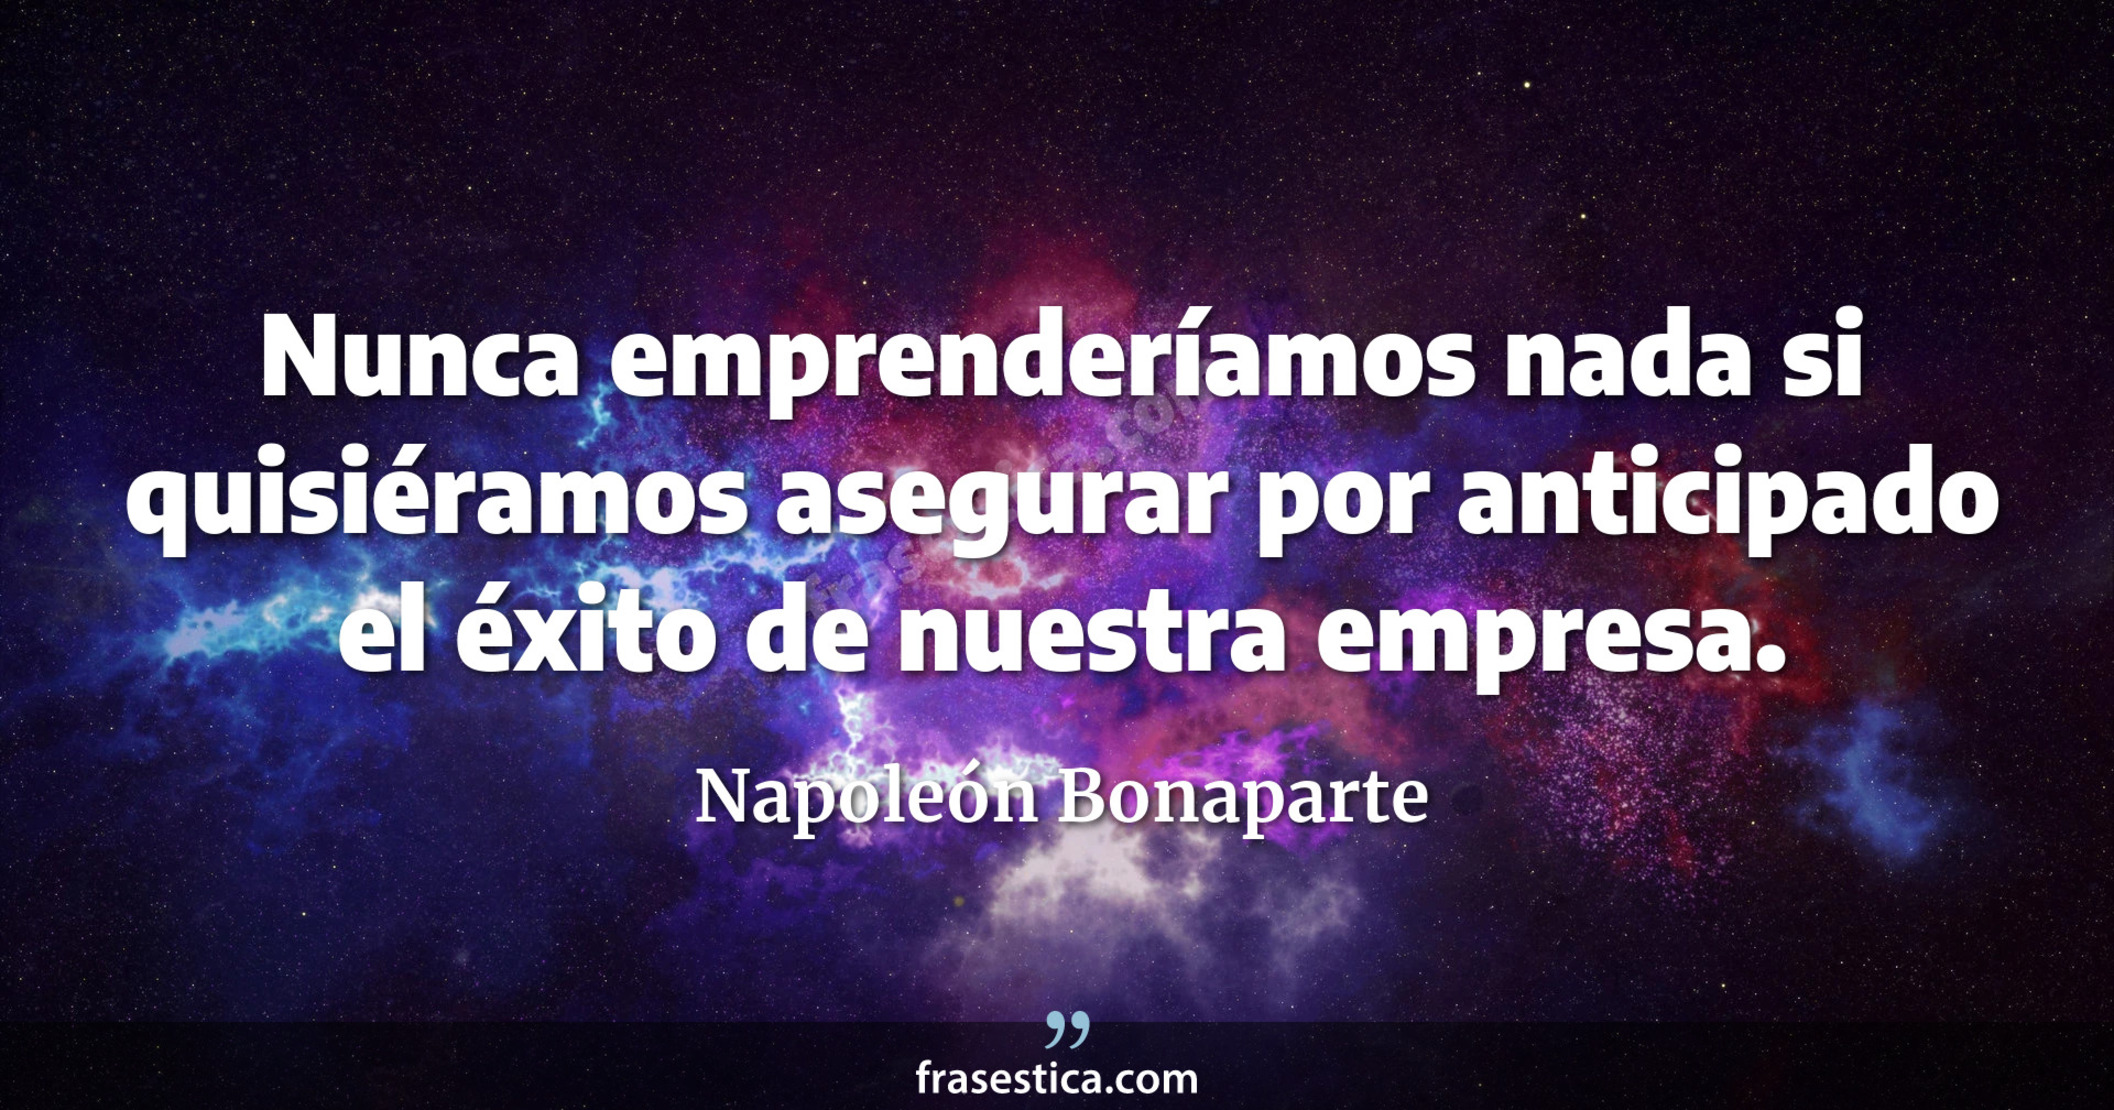 Nunca emprenderíamos nada si quisiéramos asegurar por anticipado el éxito de nuestra empresa. - Napoleón Bonaparte